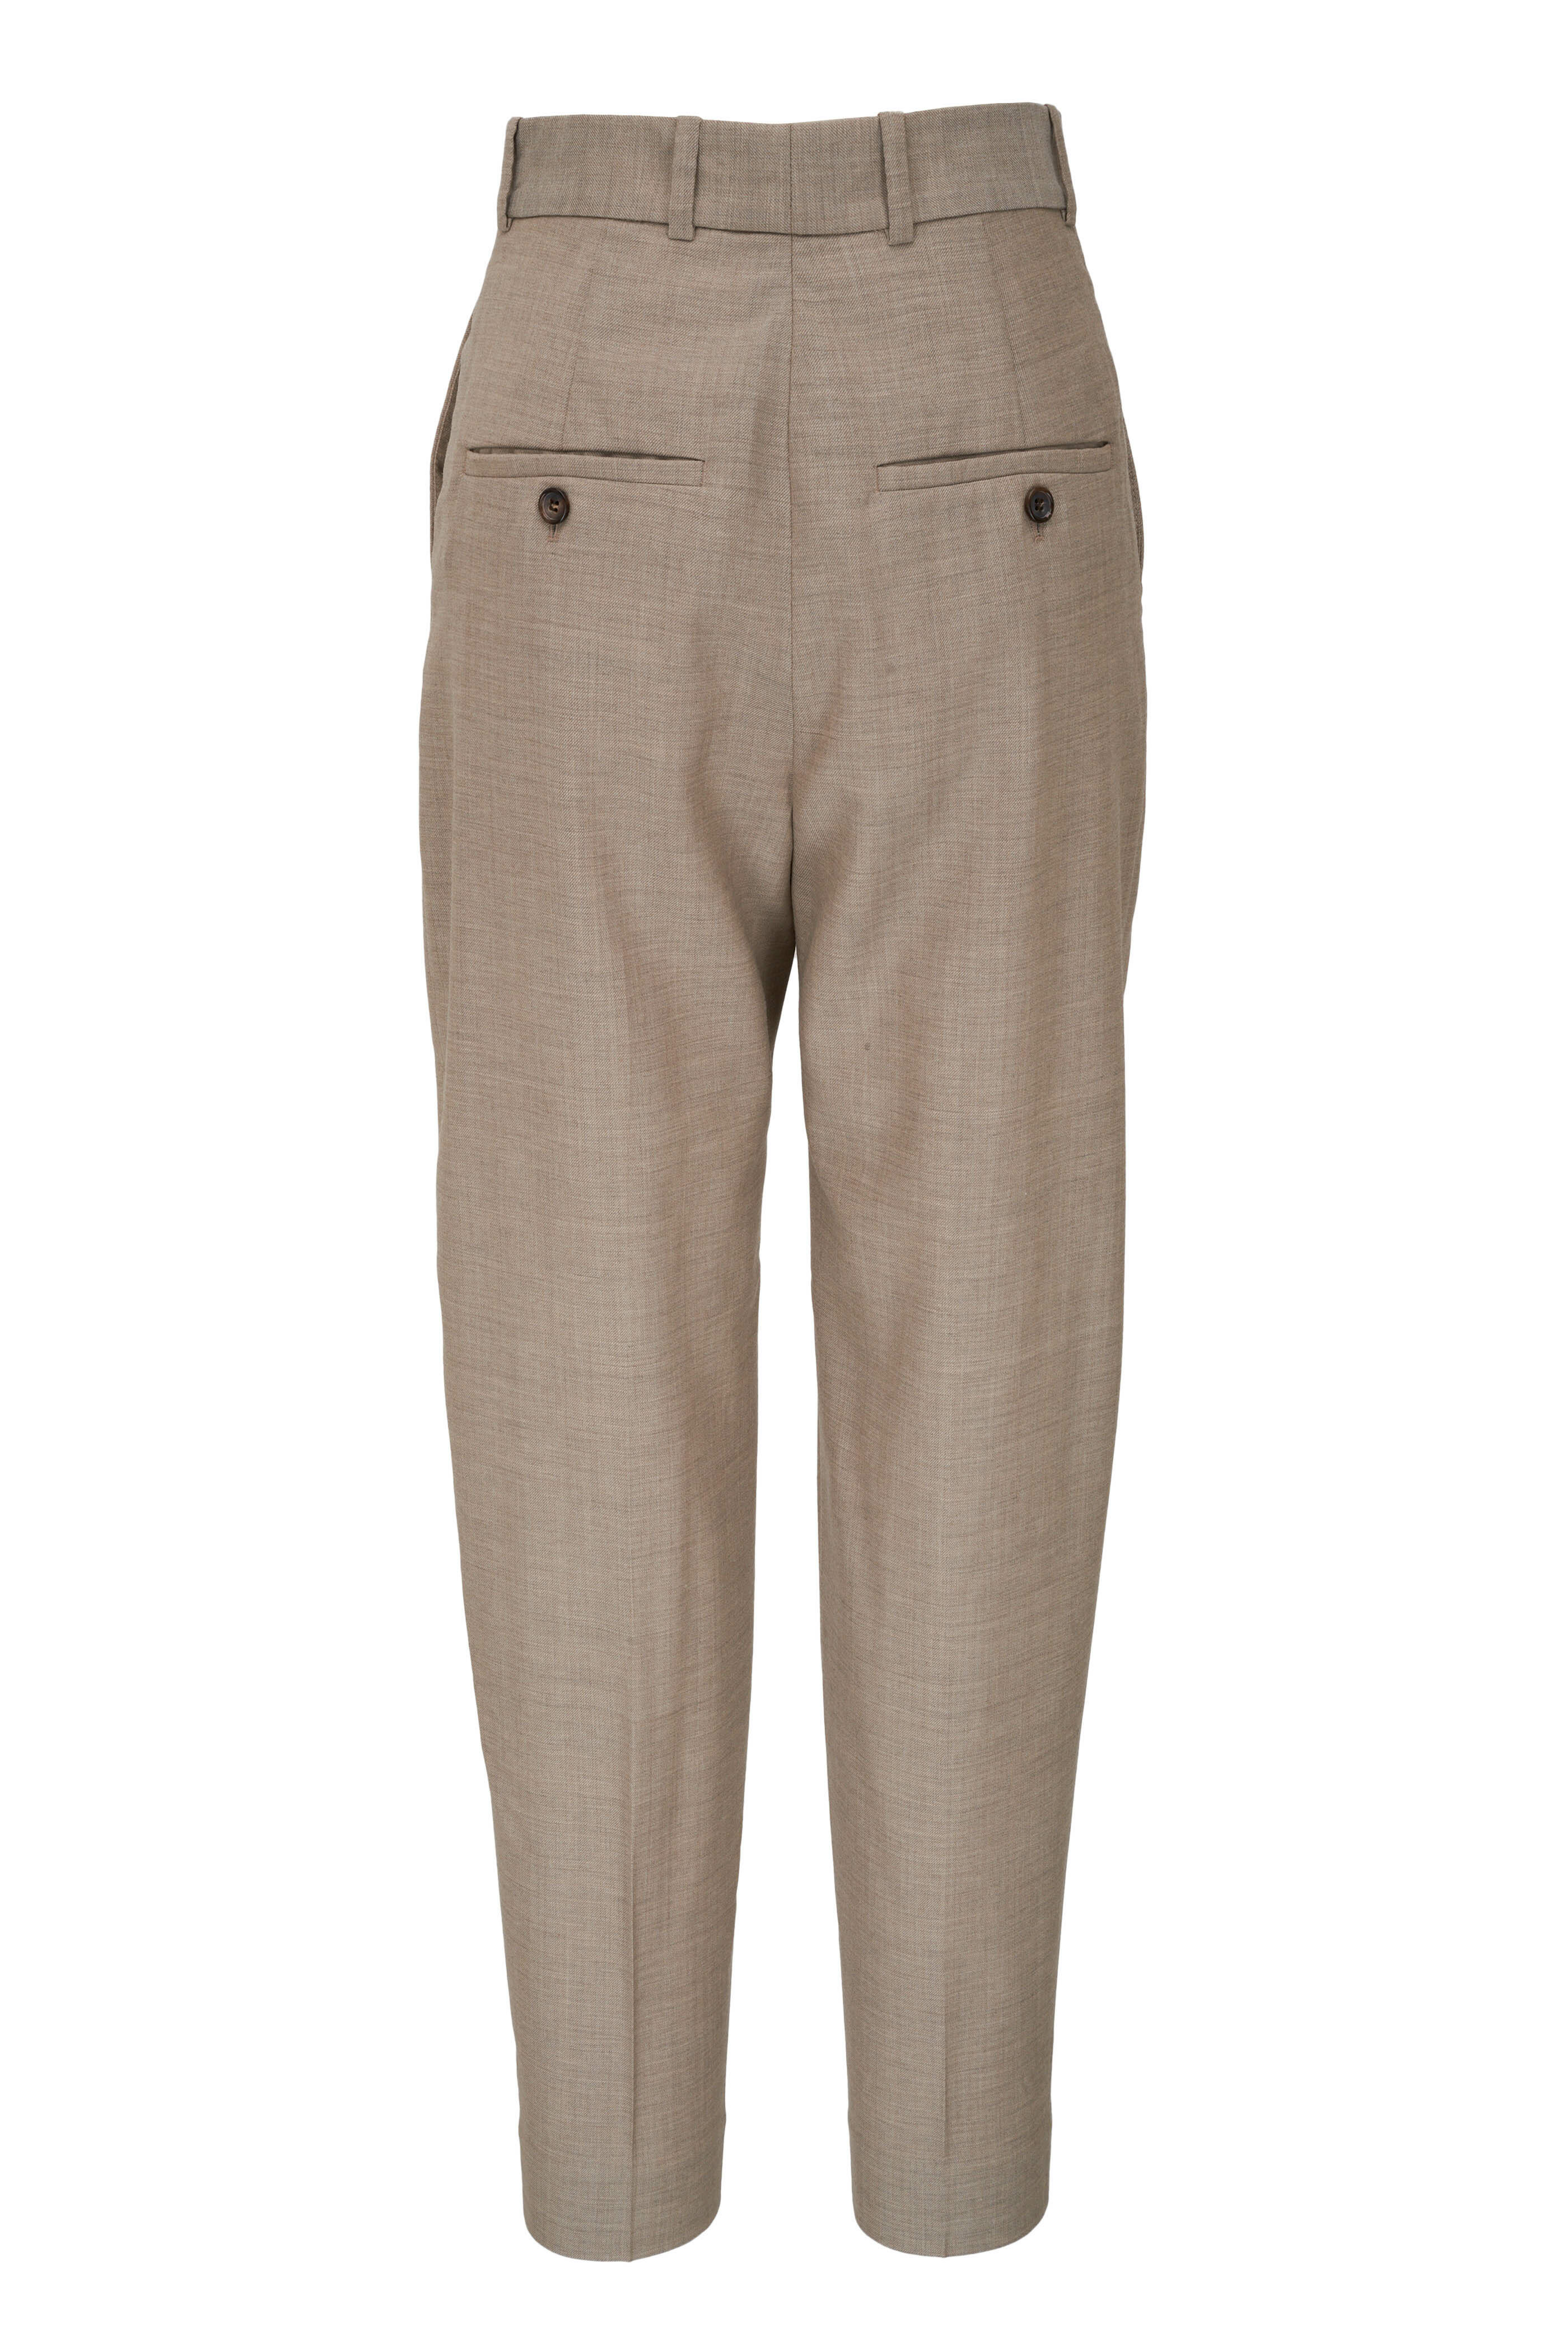 Totême - Beige Sewn Pleat Wool Pants